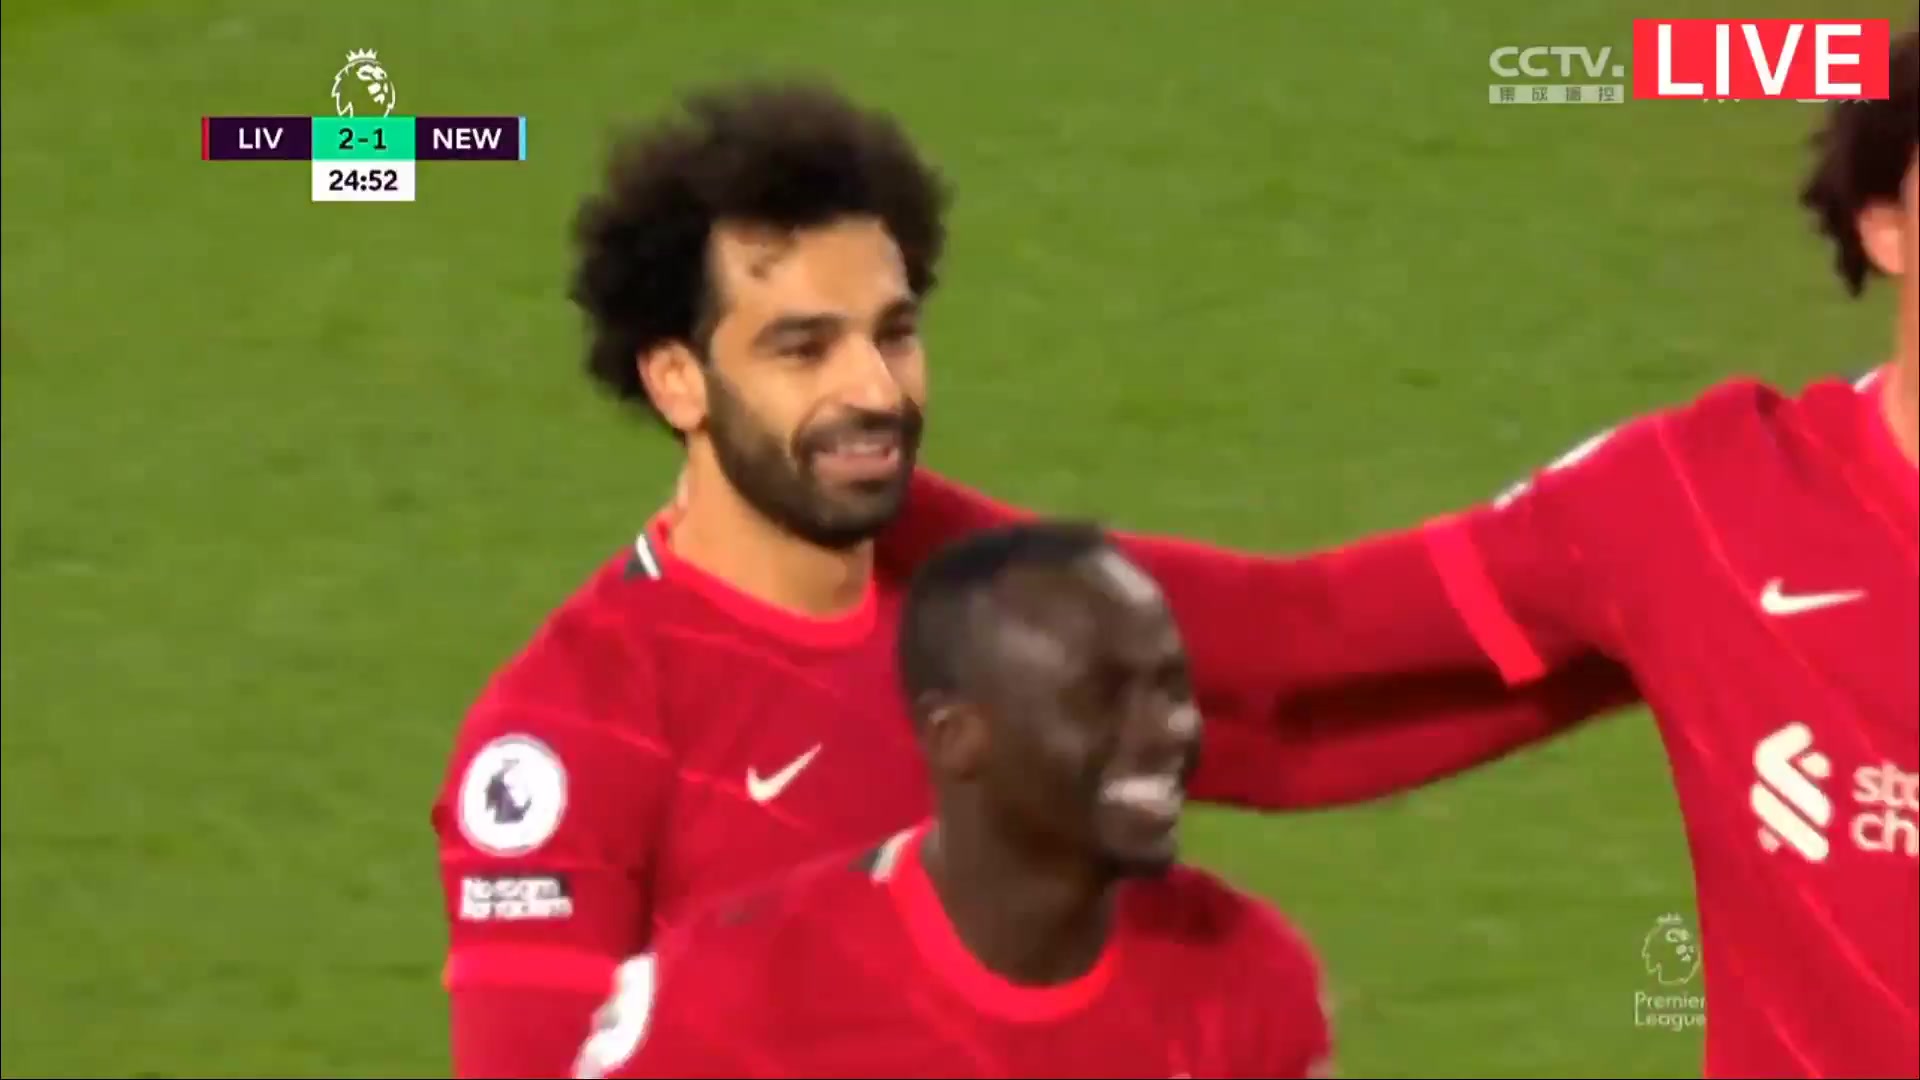 EPL Liverpool Vs Newcastle United Mohamed Salah Ghaly Goal in 23 min, Score 2:1